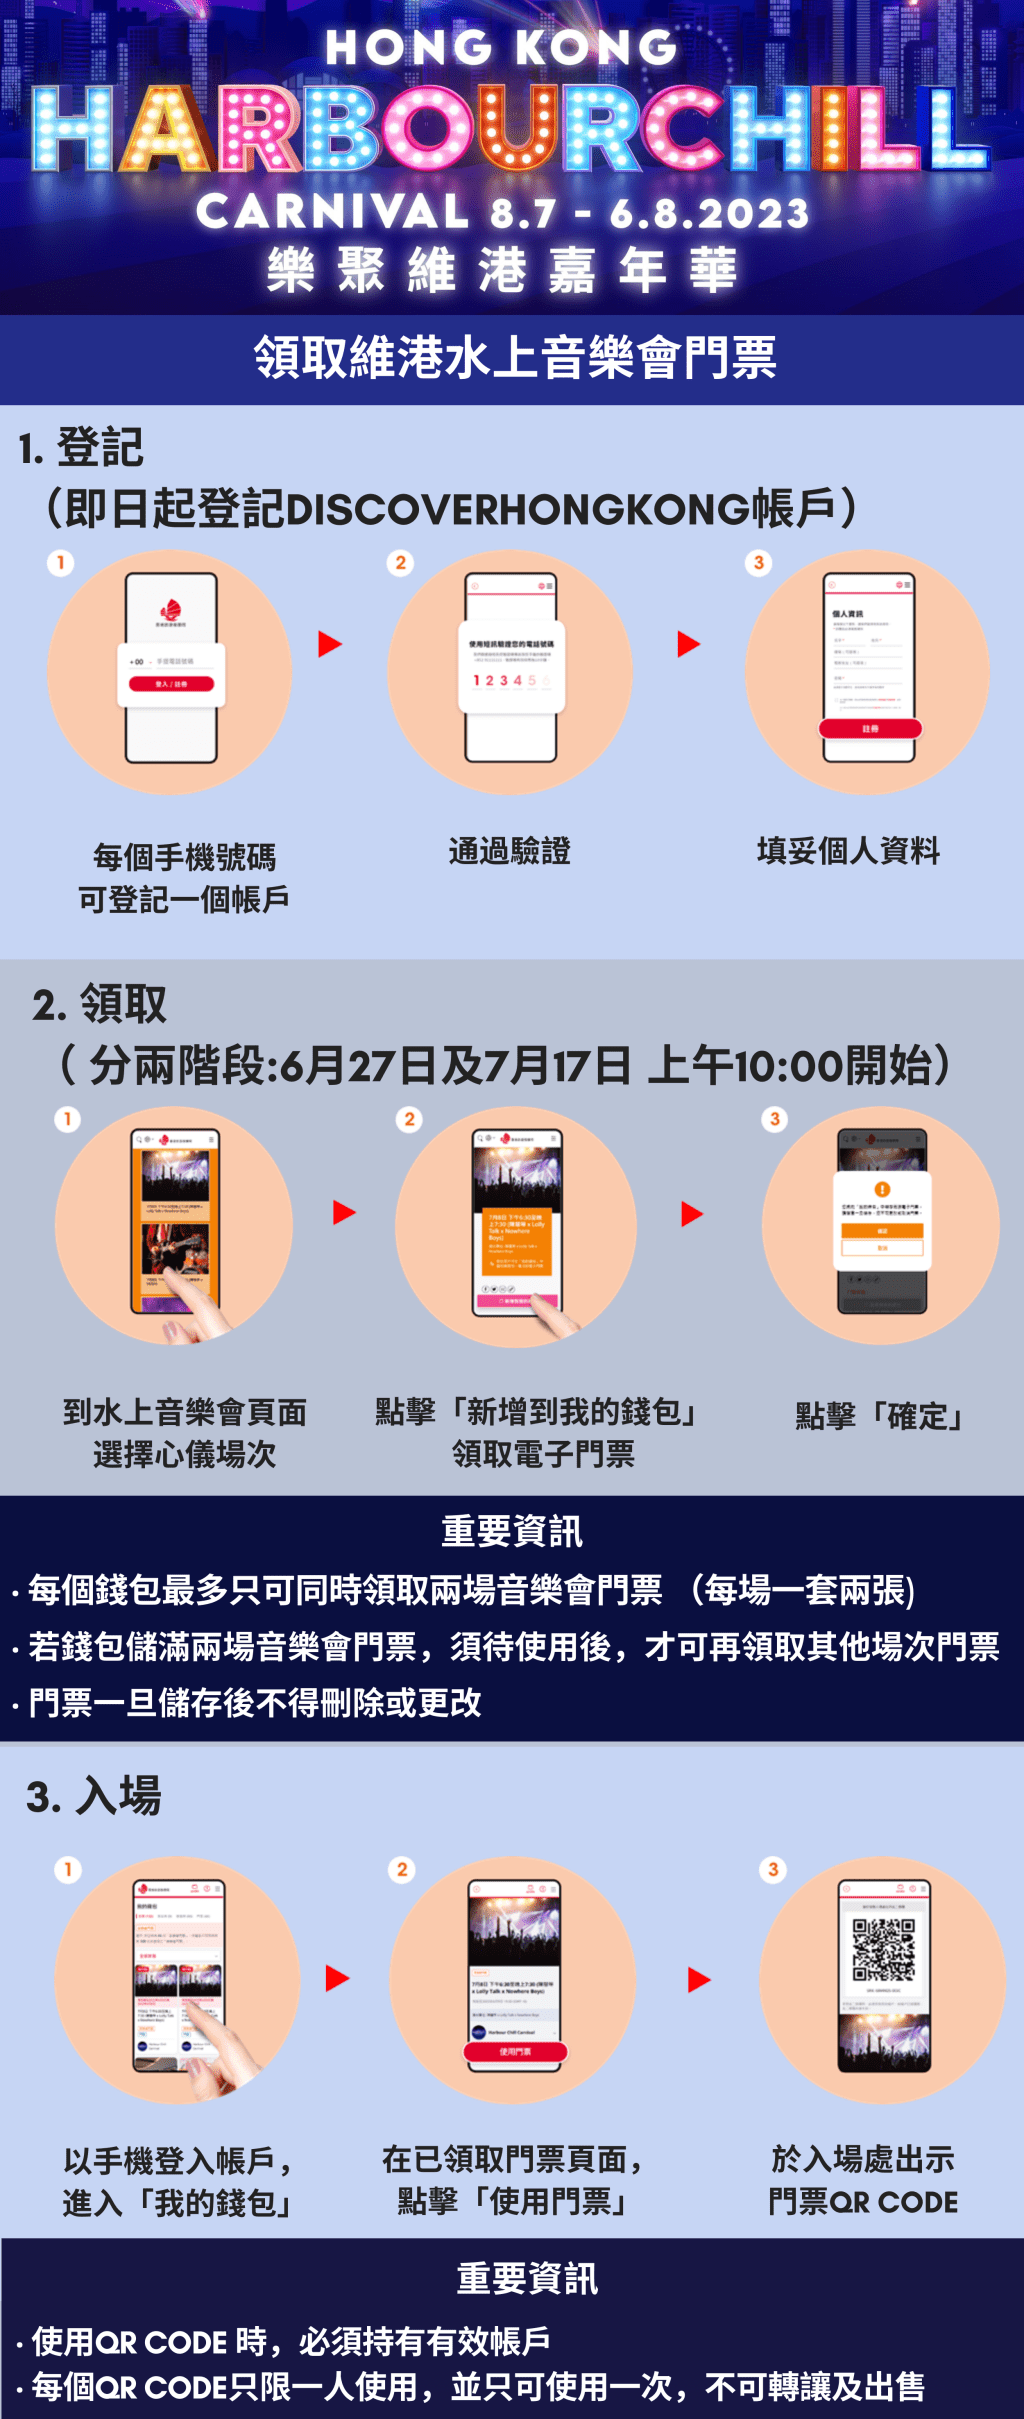 市民須於即日起在 Discover Hong Kong 網站以手機號碼登記帳戶，每個號碼只可登記一個帳戶，門票數量有限，領完即止。旅發局